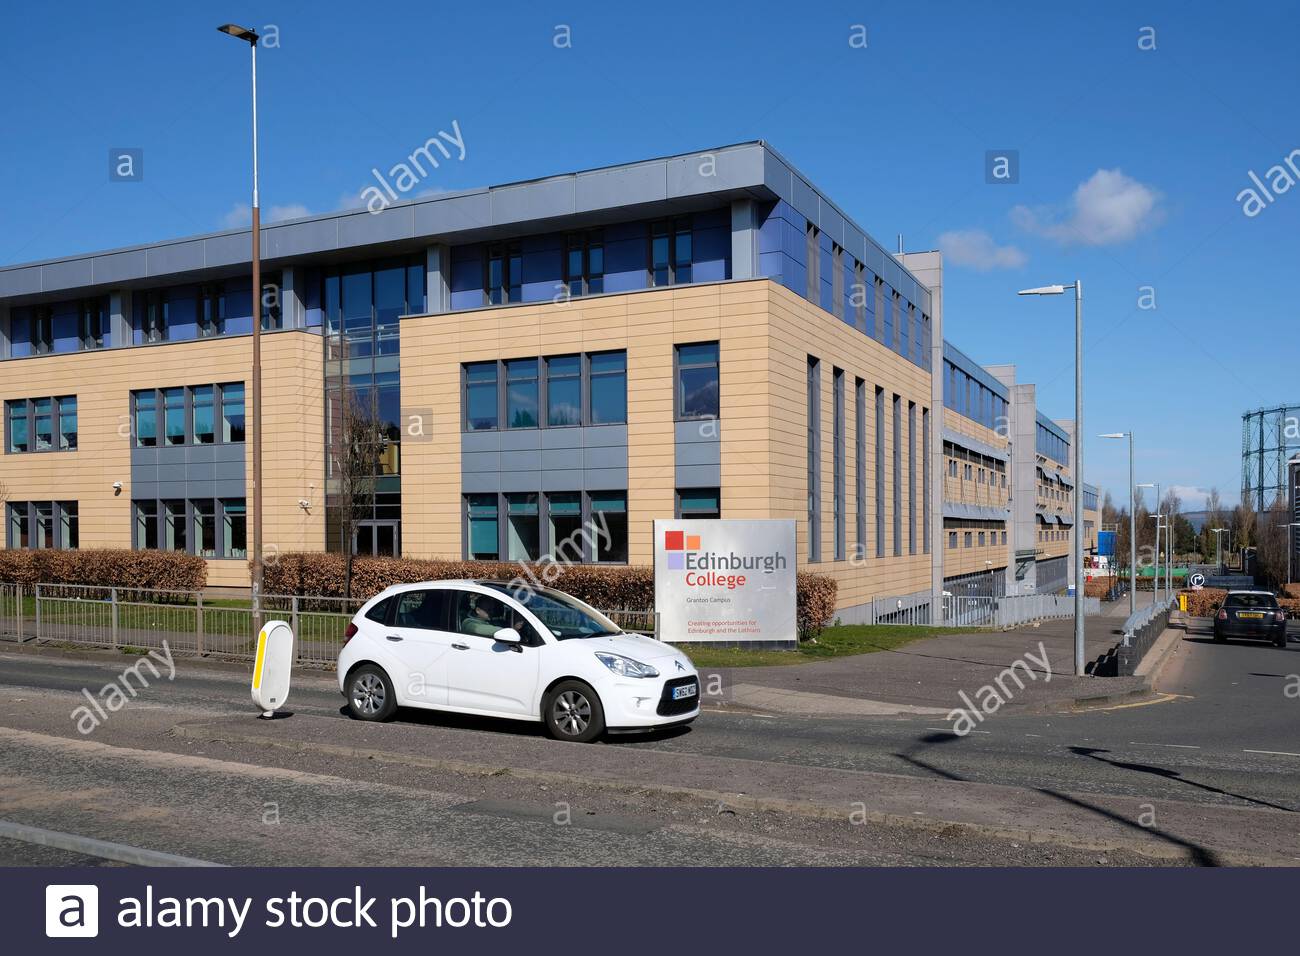 Edinburgh College building, Granton Campus, Edinburgh, Scotland Stock Photo